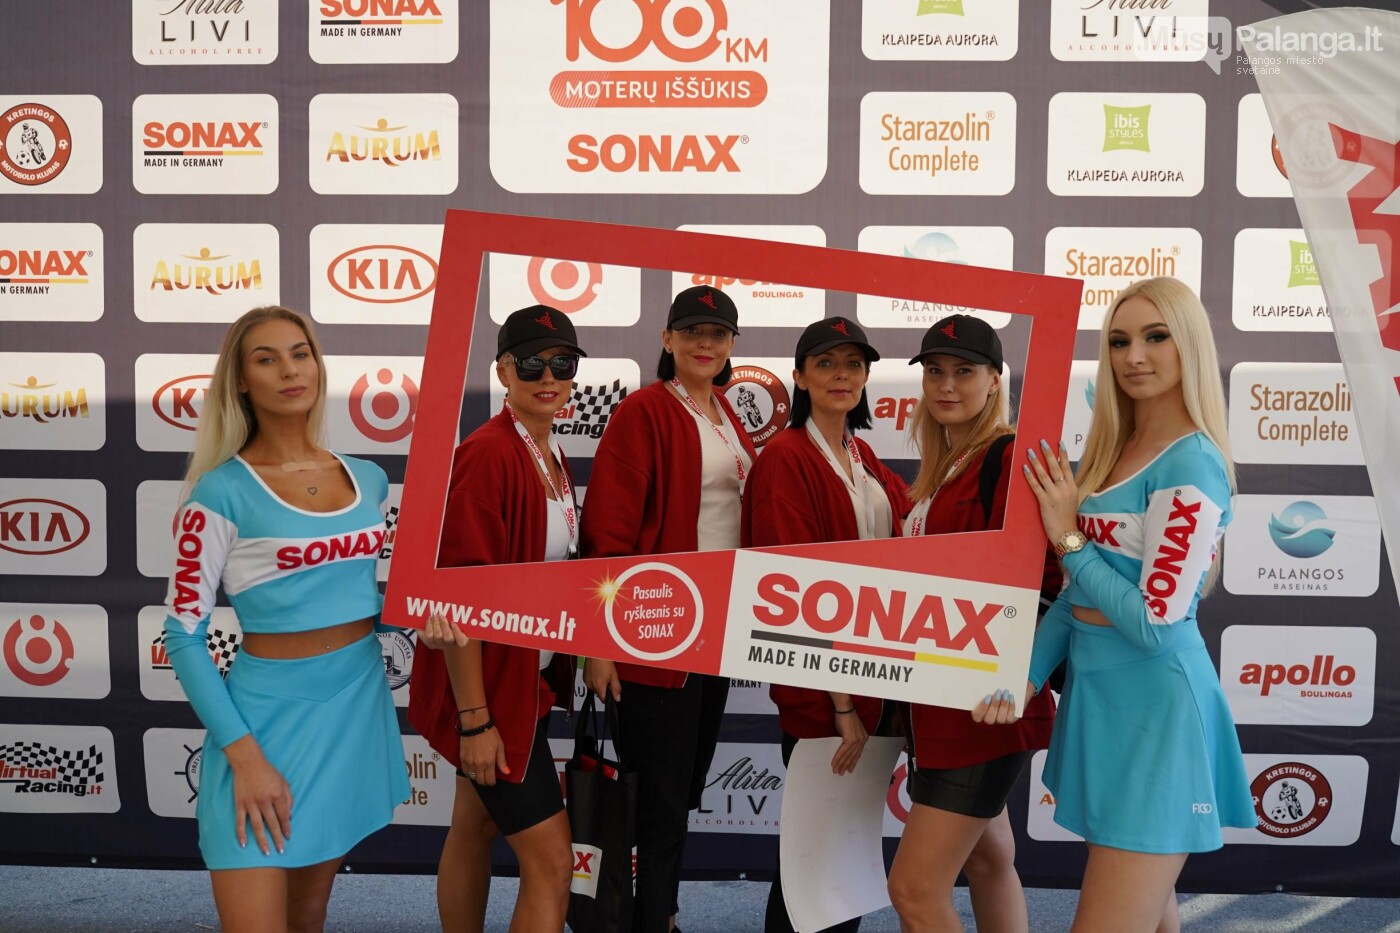 Moterys pradėjo savo 108 km iššūkį su „Sonax“, nuotrauka-4